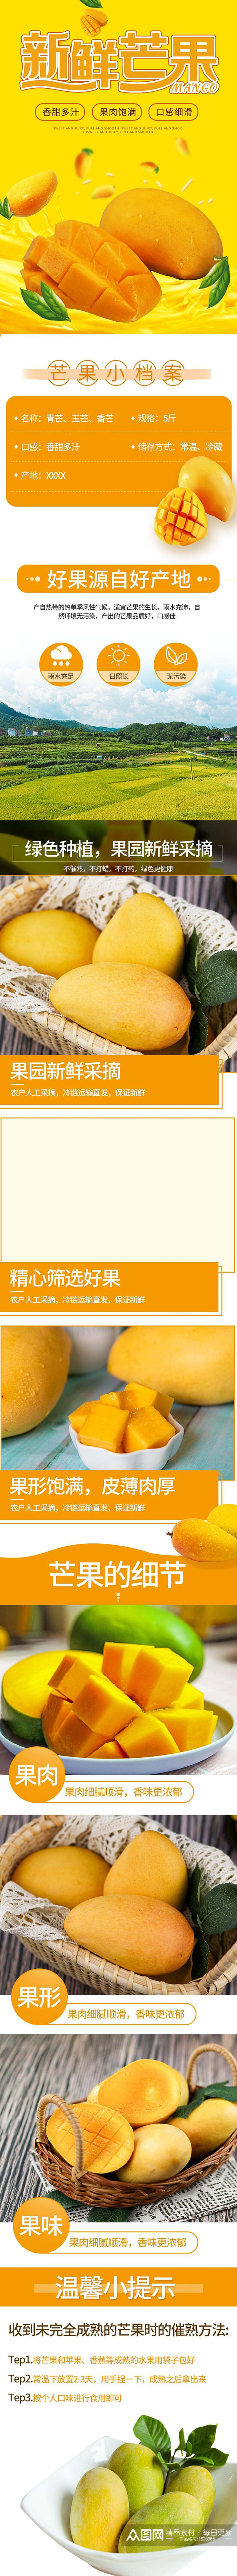 新鲜芒果水果详情页设计素材